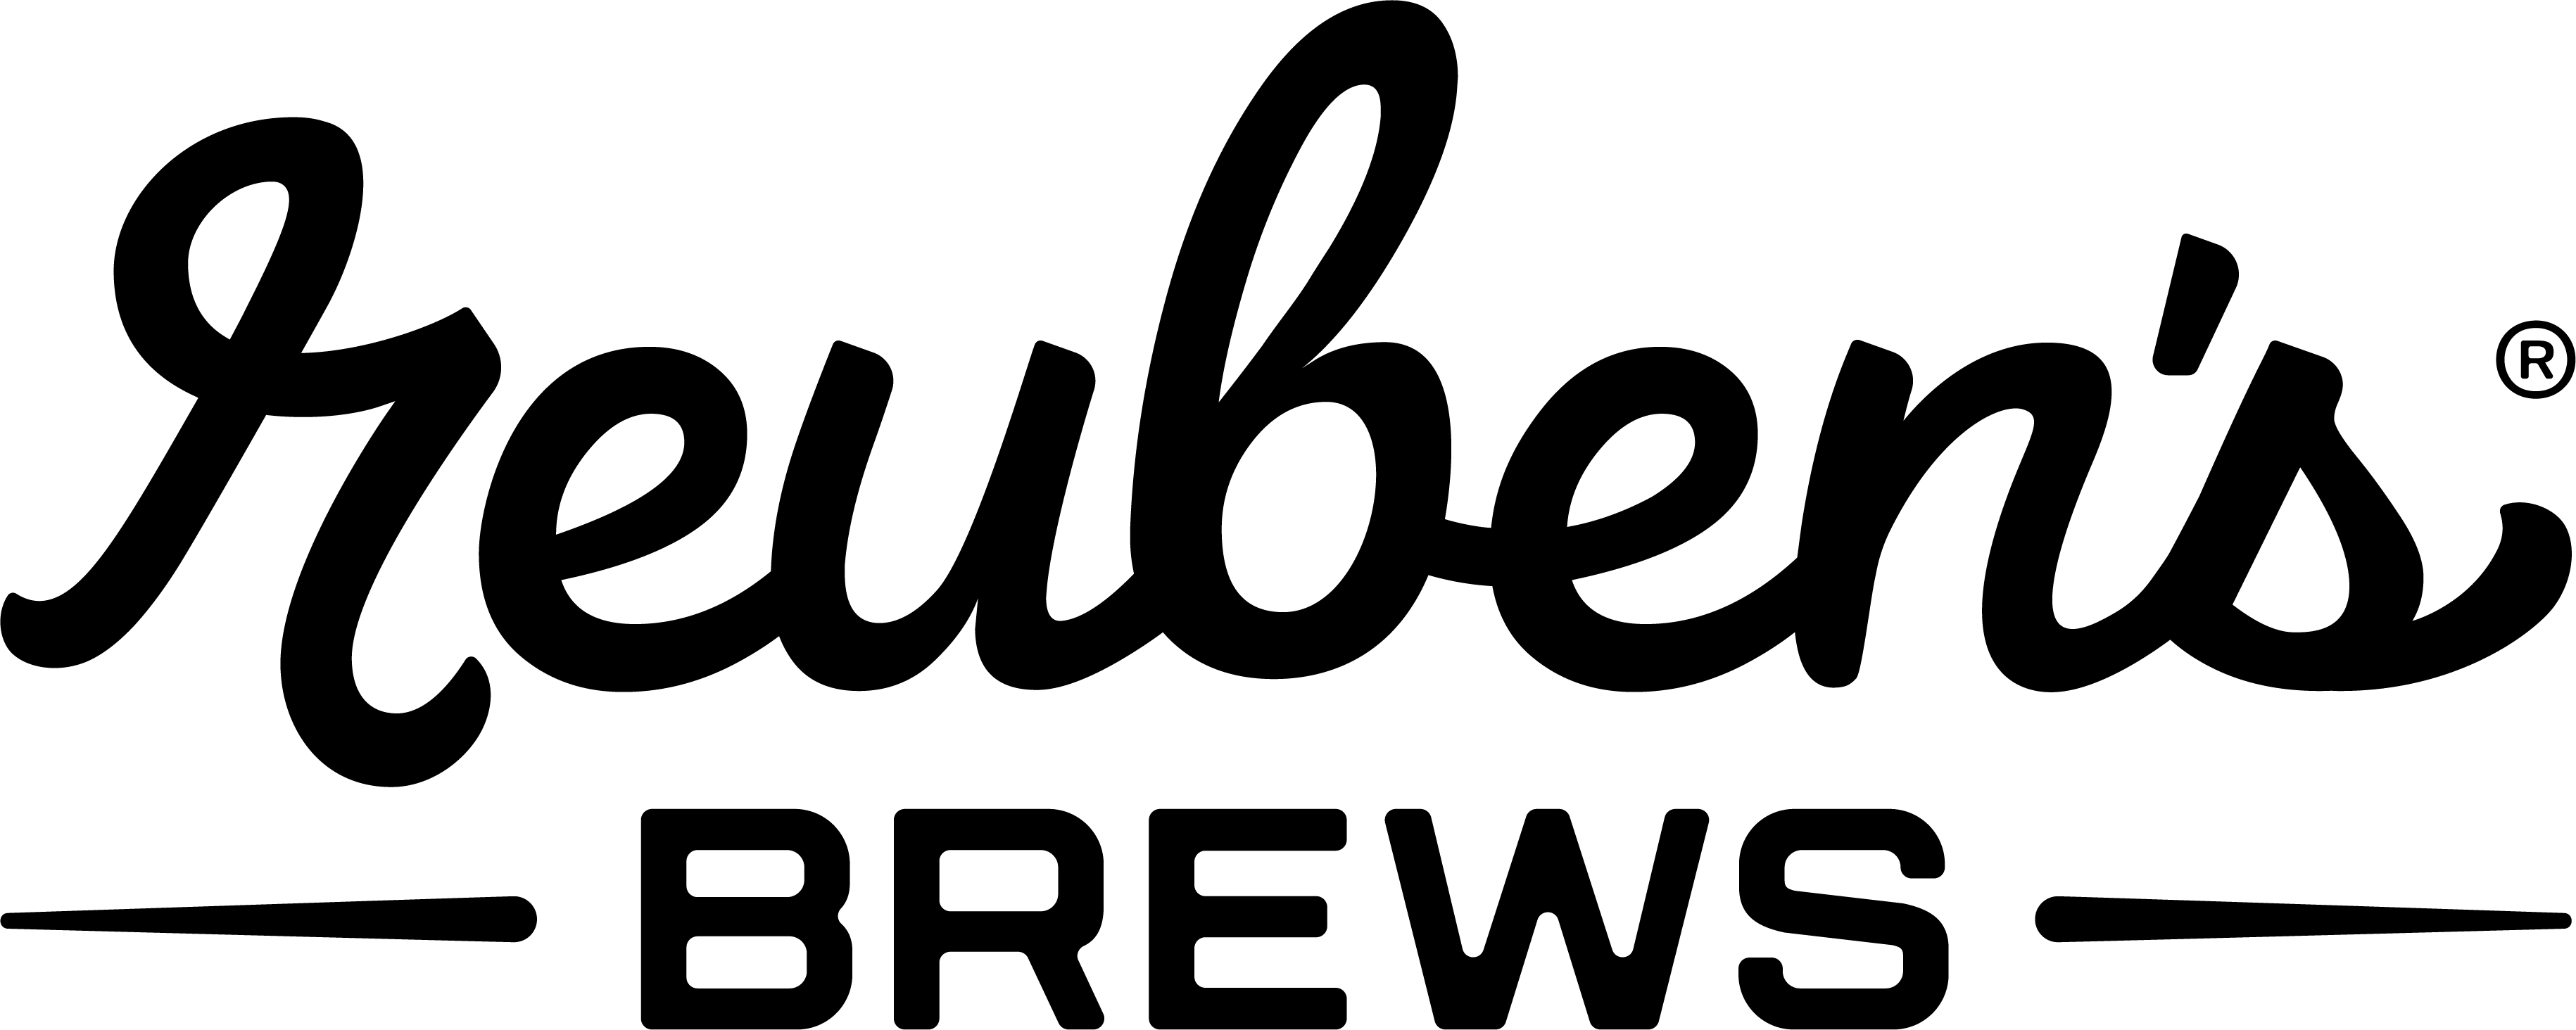 Reuben's Brews Logo